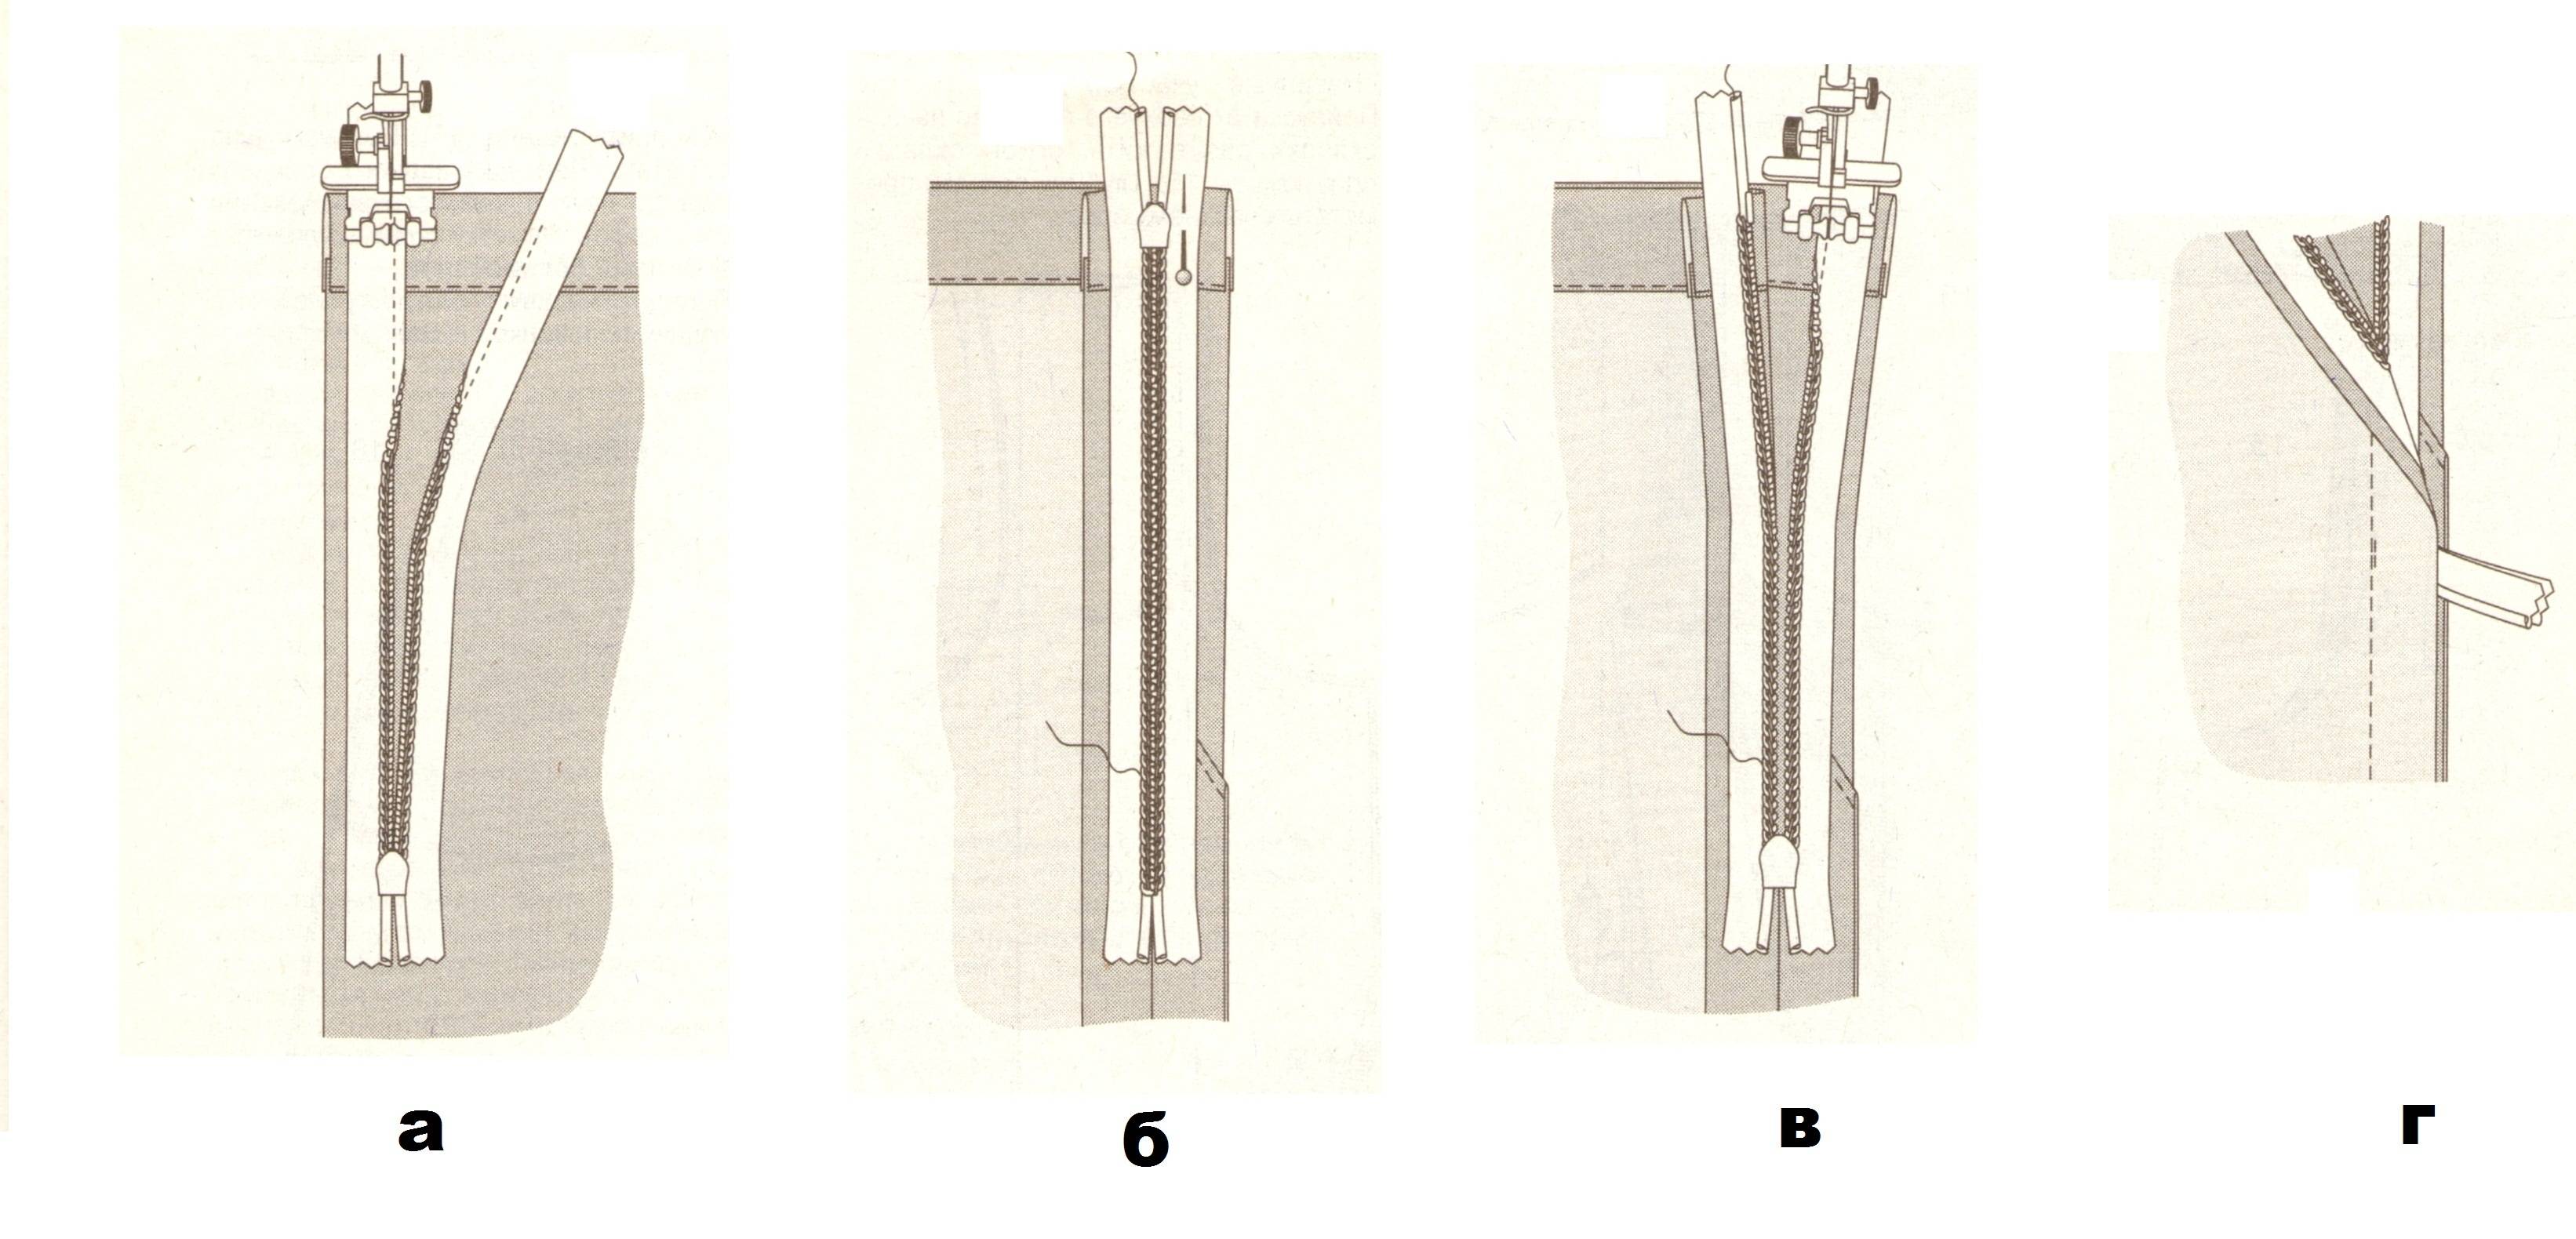 7 способов вшить молнию в юбку - как втачать потайную застежку